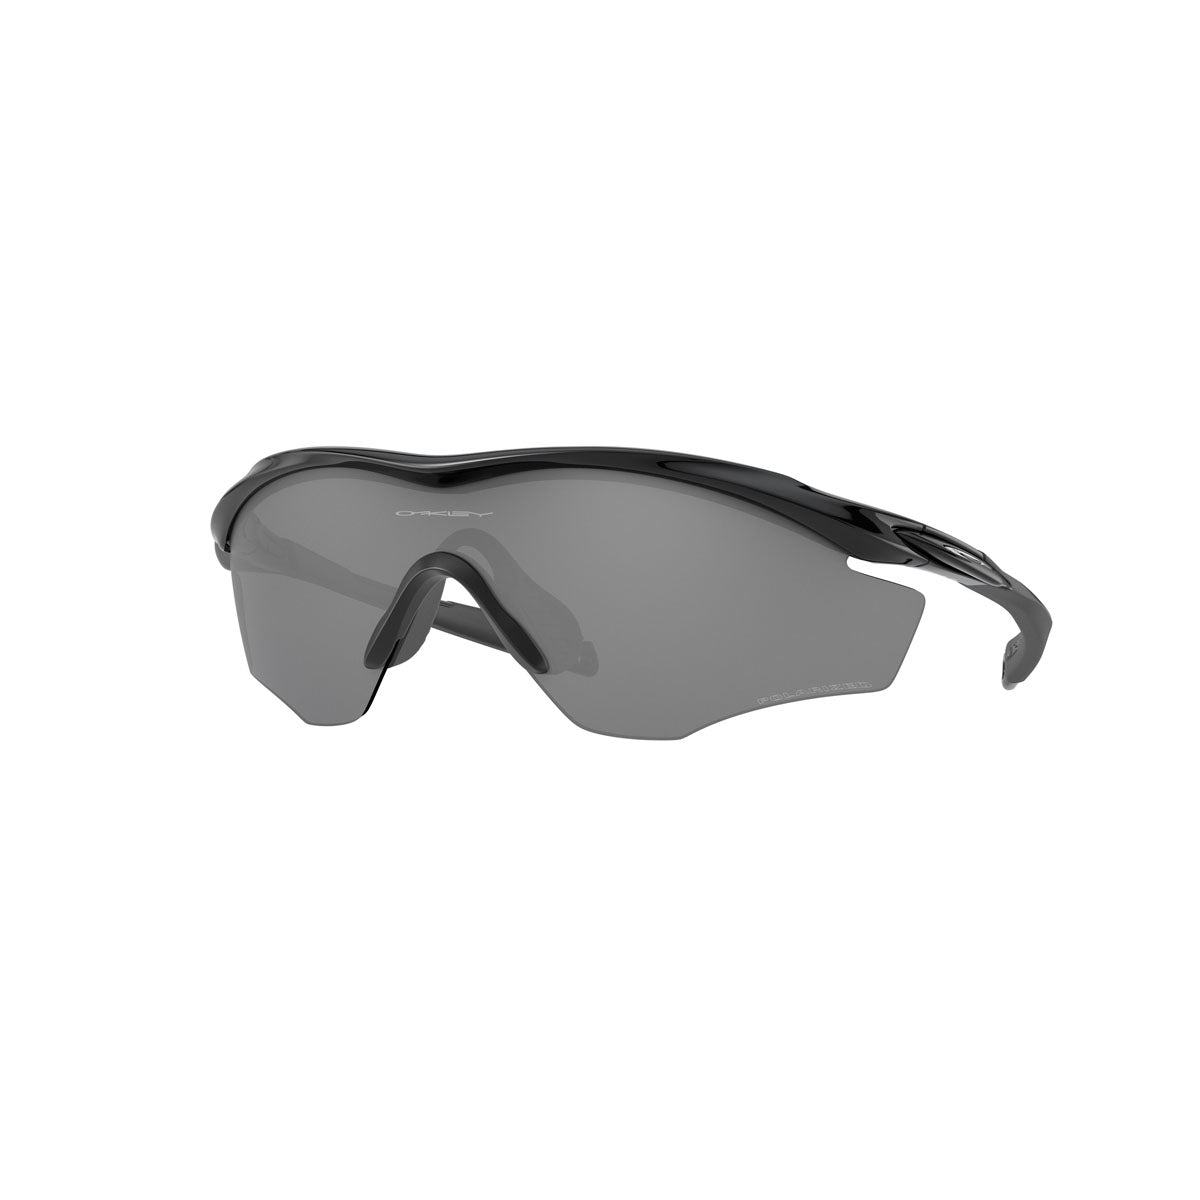 Oakley M2 Frame Xl Polarized Sunglasses - Polished Black/Black Iridium Polarized